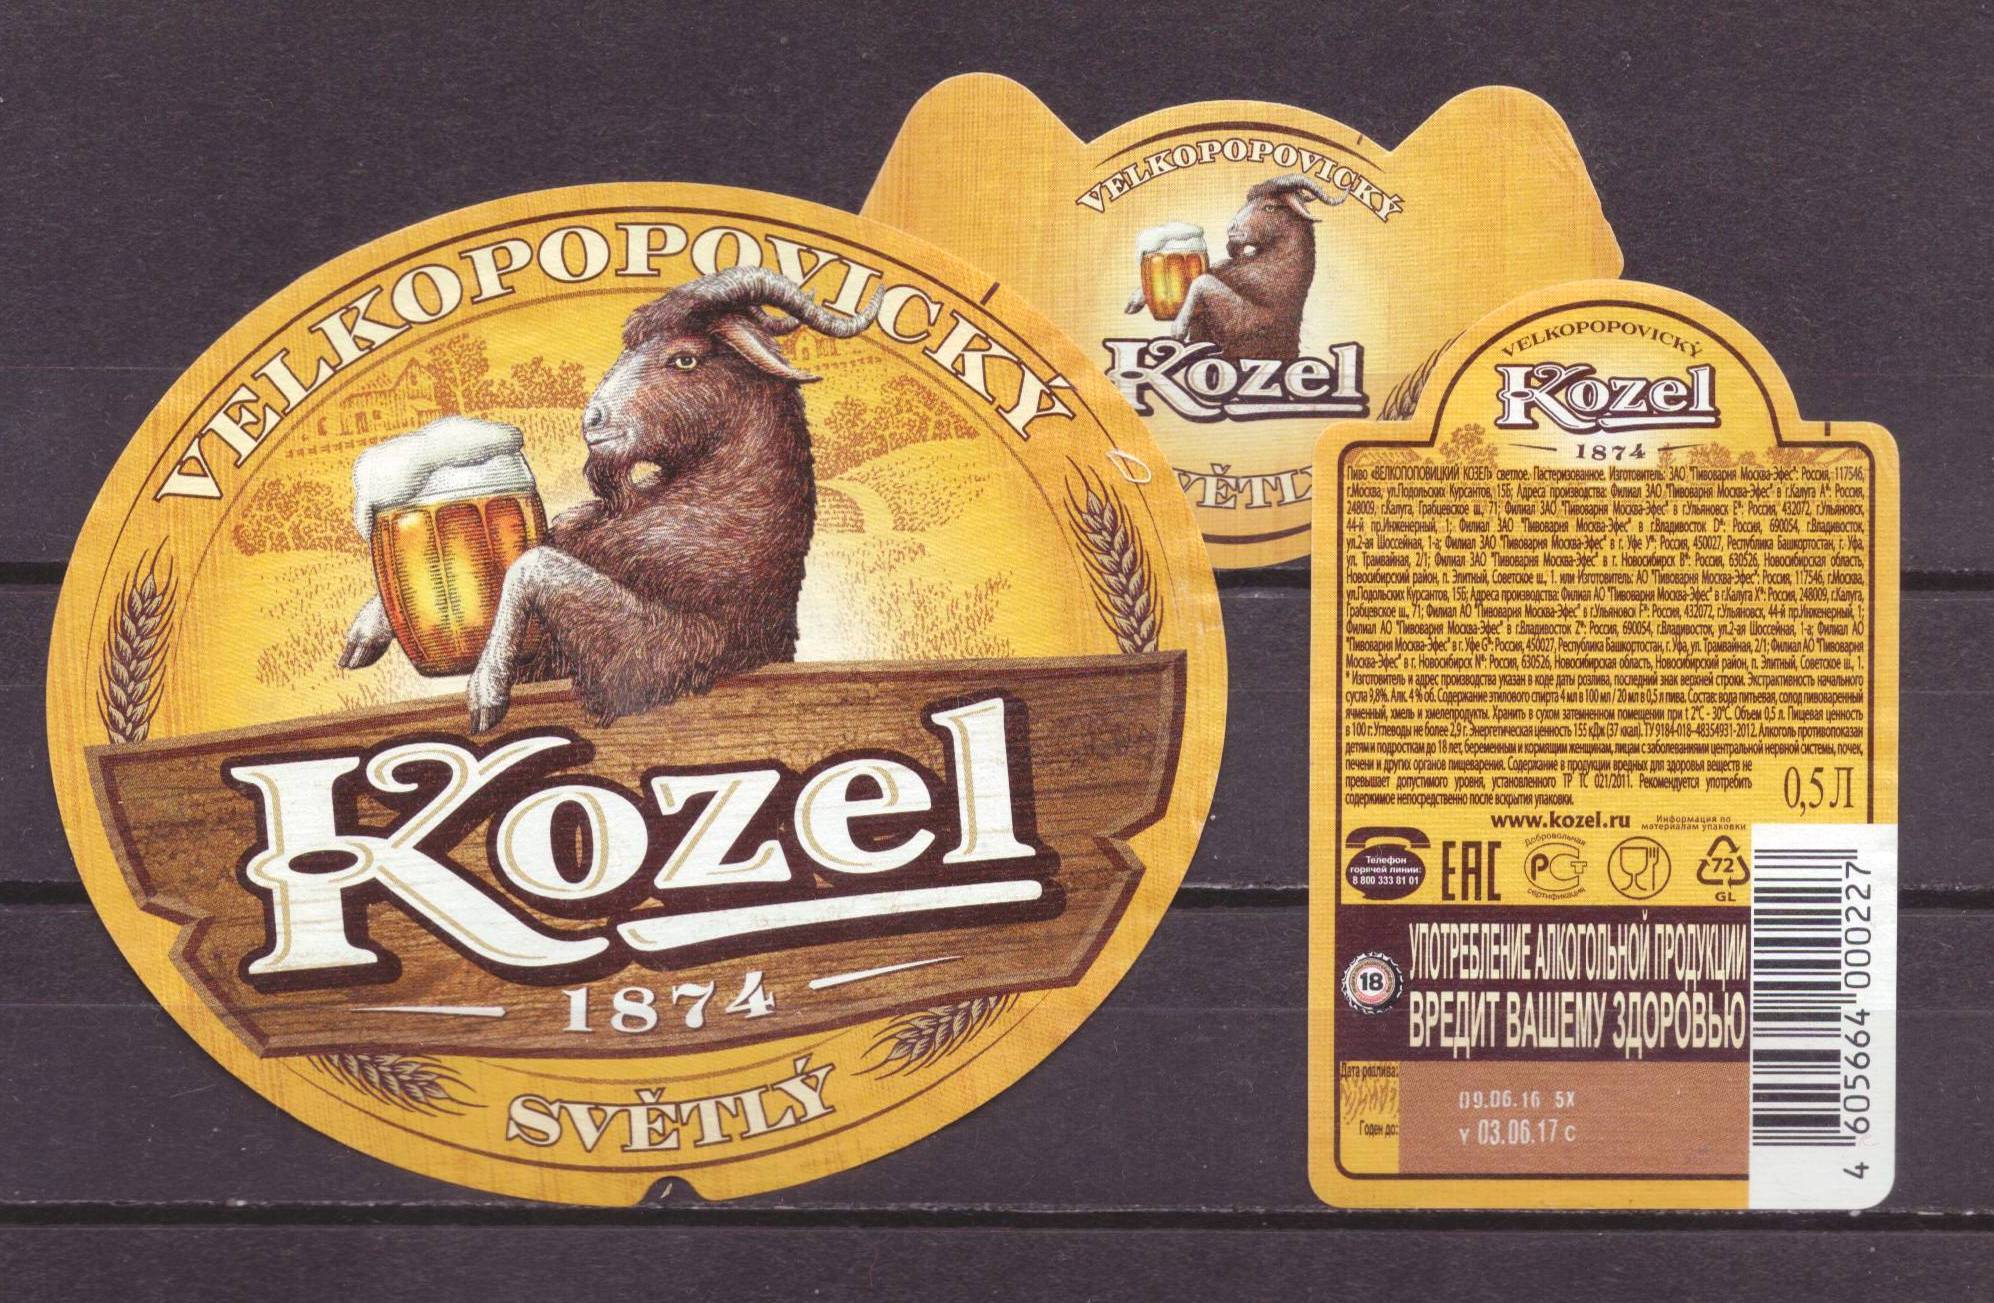 Пиво велкопоповицкий козел: описание и виды марки